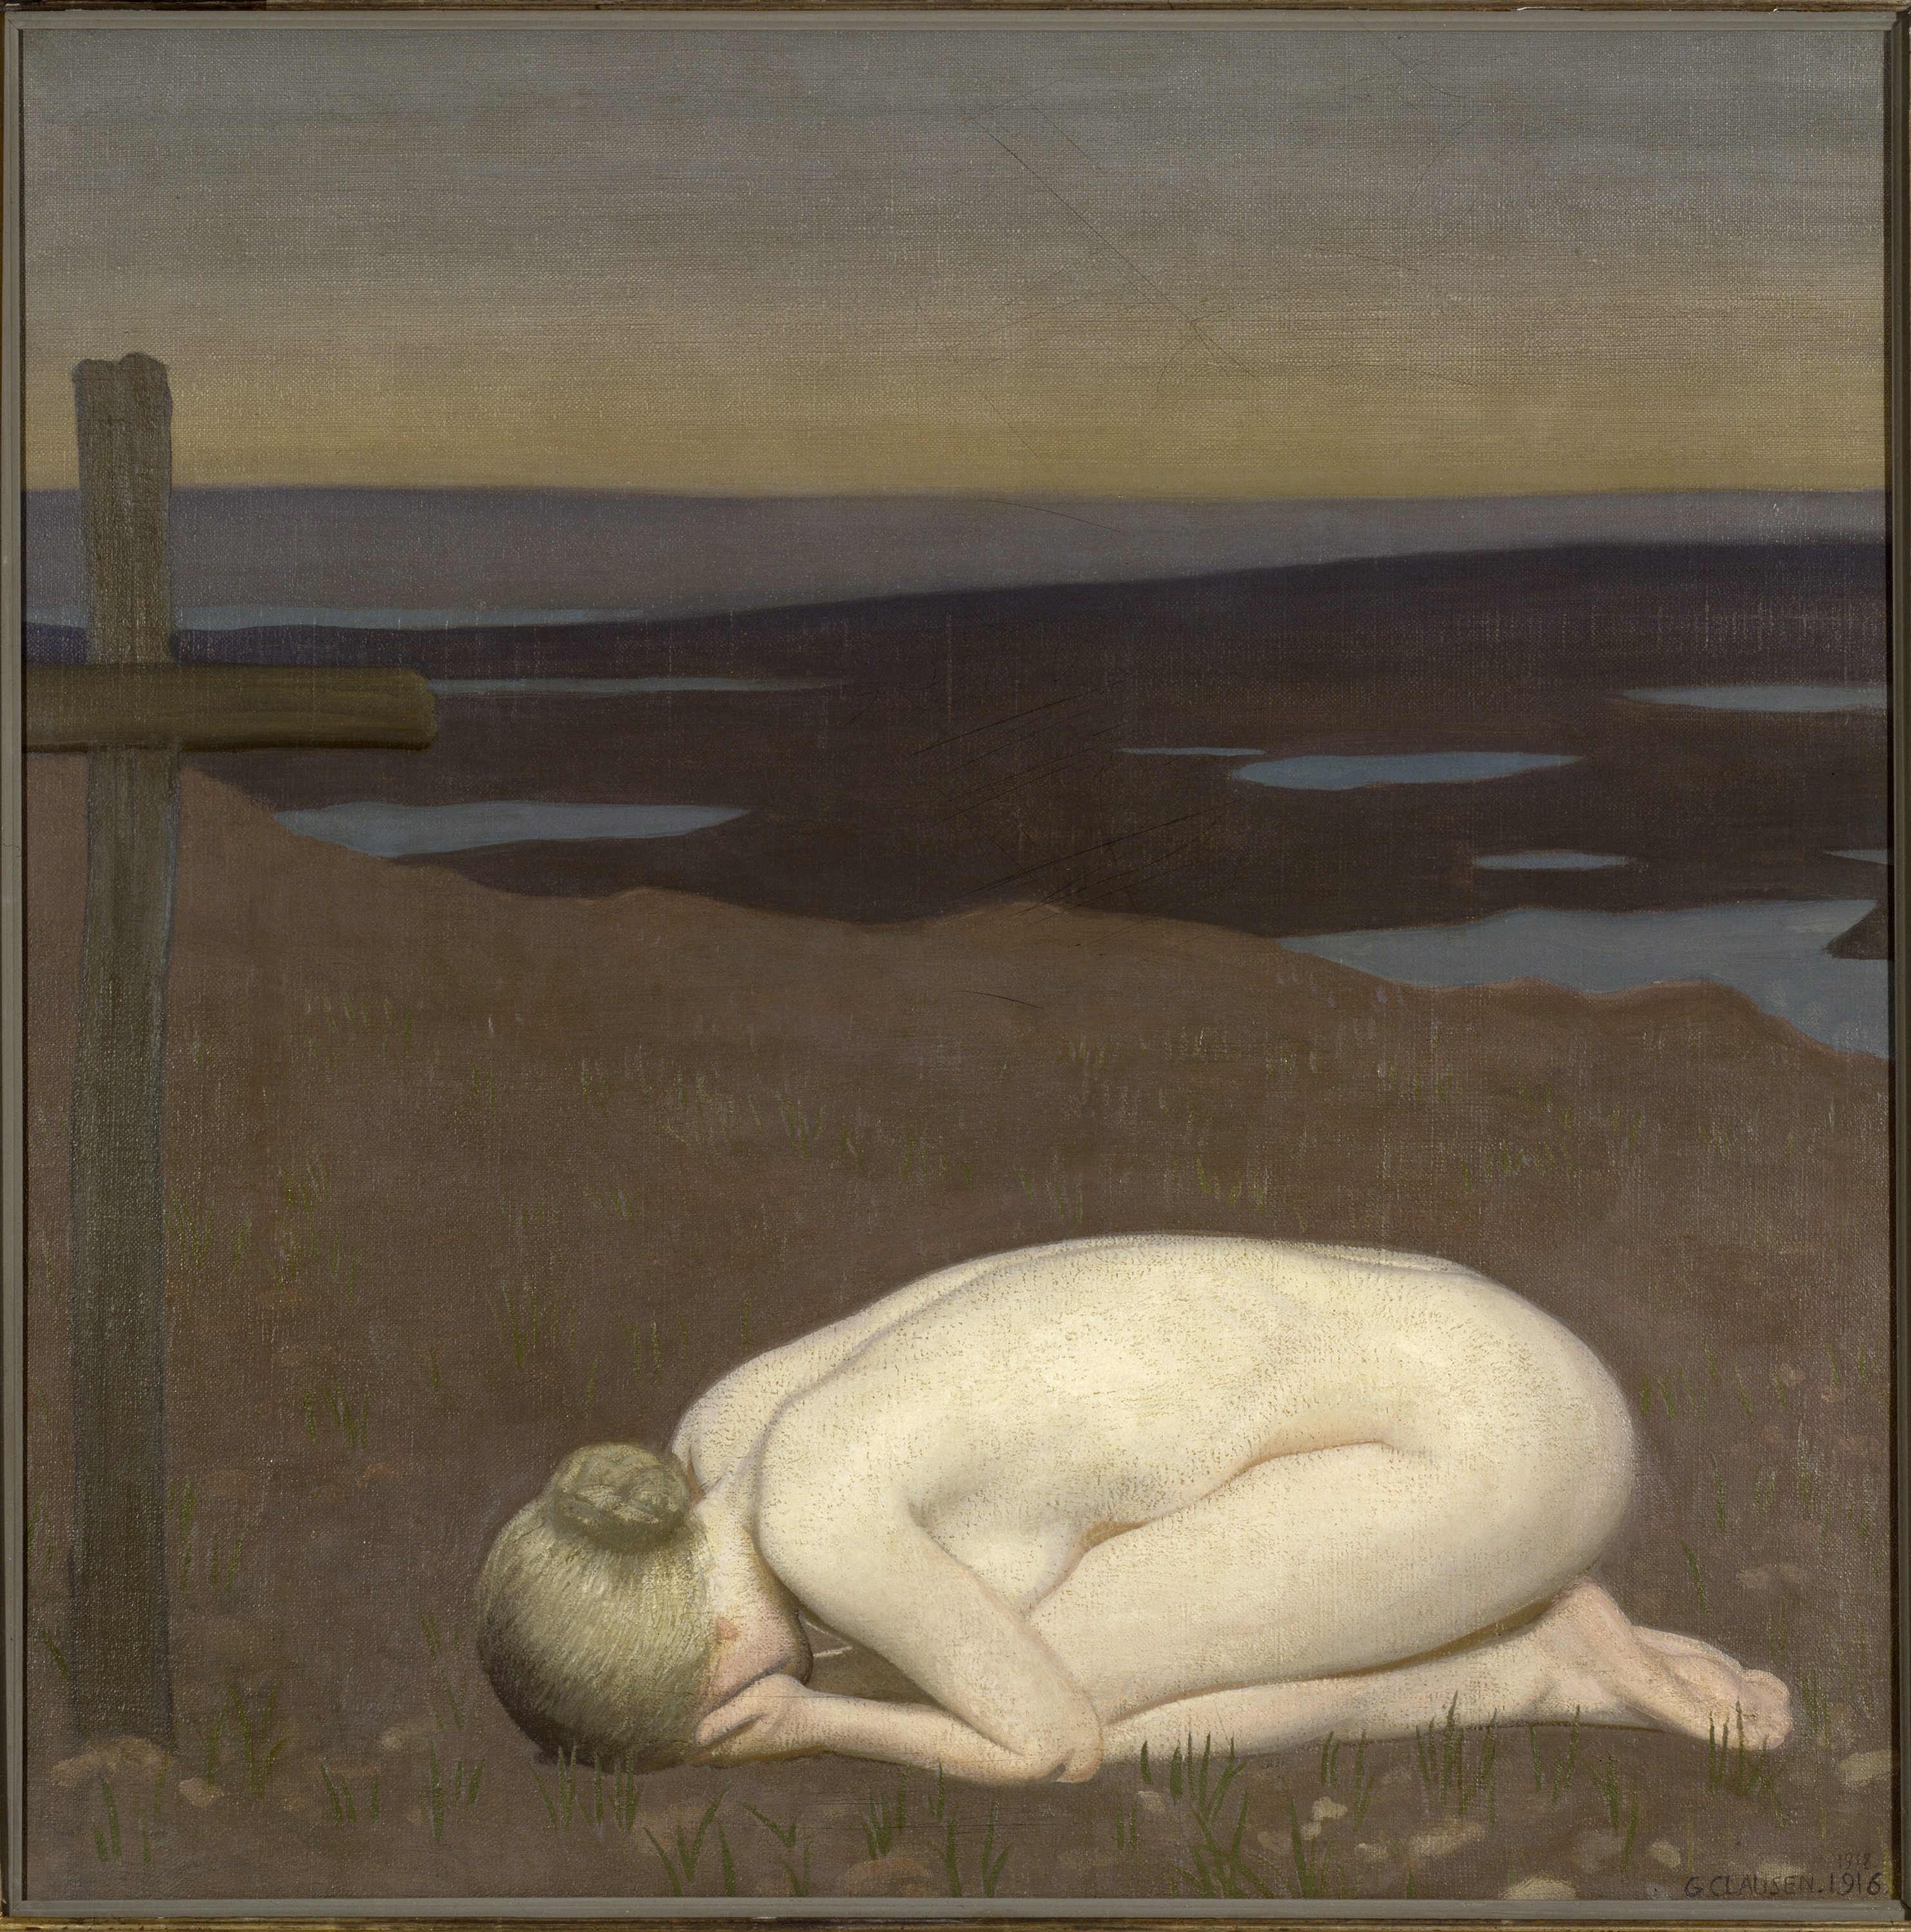 Smutek Mláde Ženy by George Clausen - 1916 - 91.4 x 91.4 cm 